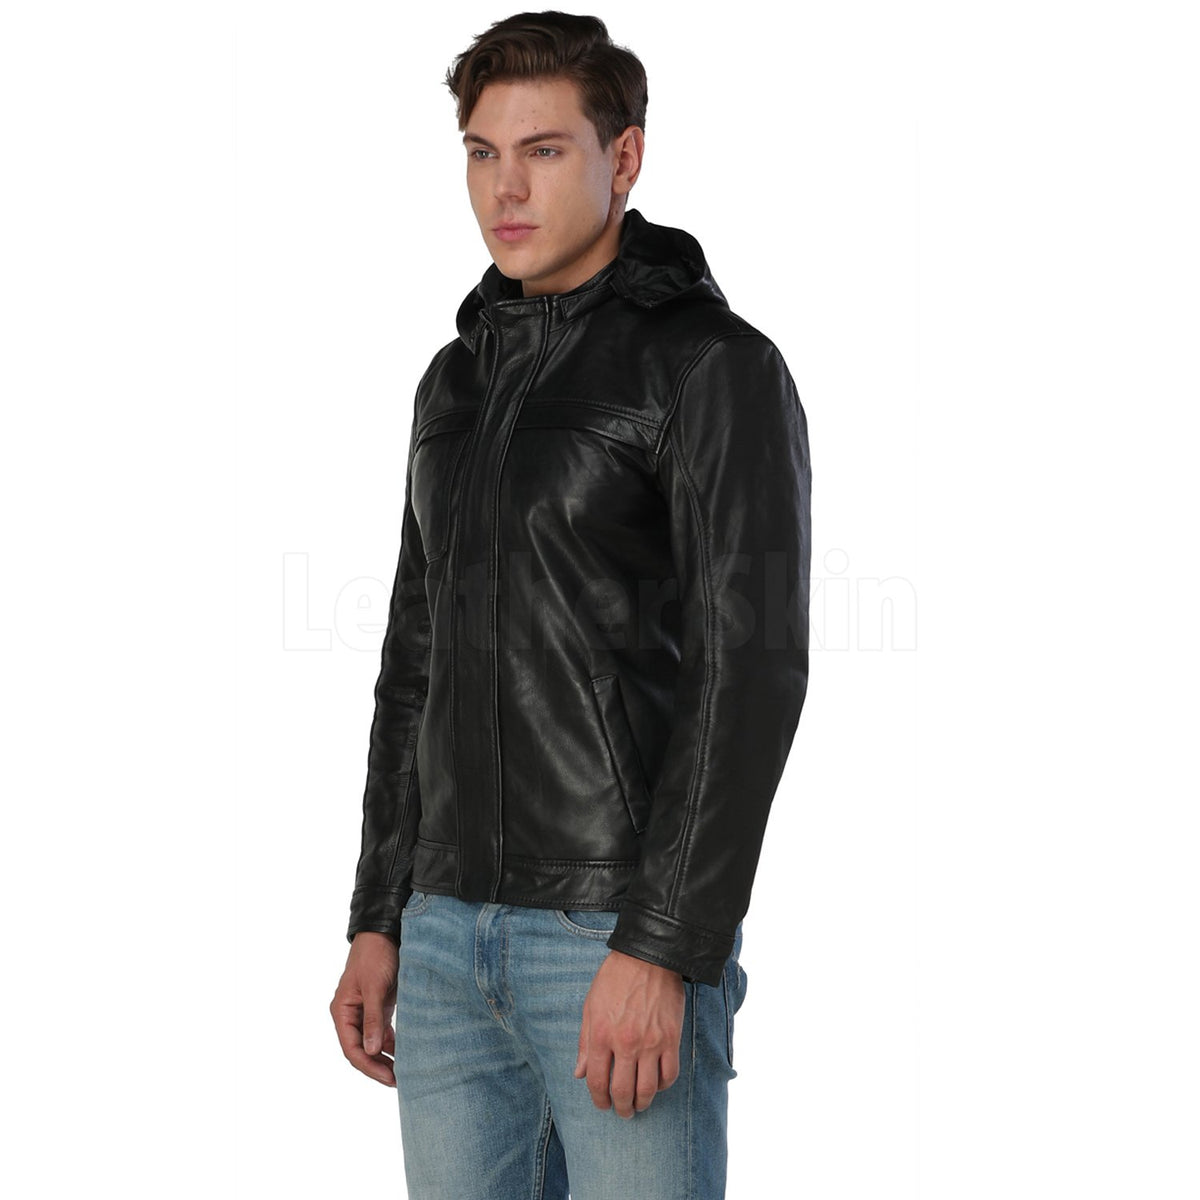 Men’s Black Hooded Leather Jacket - Leather Skin Shop